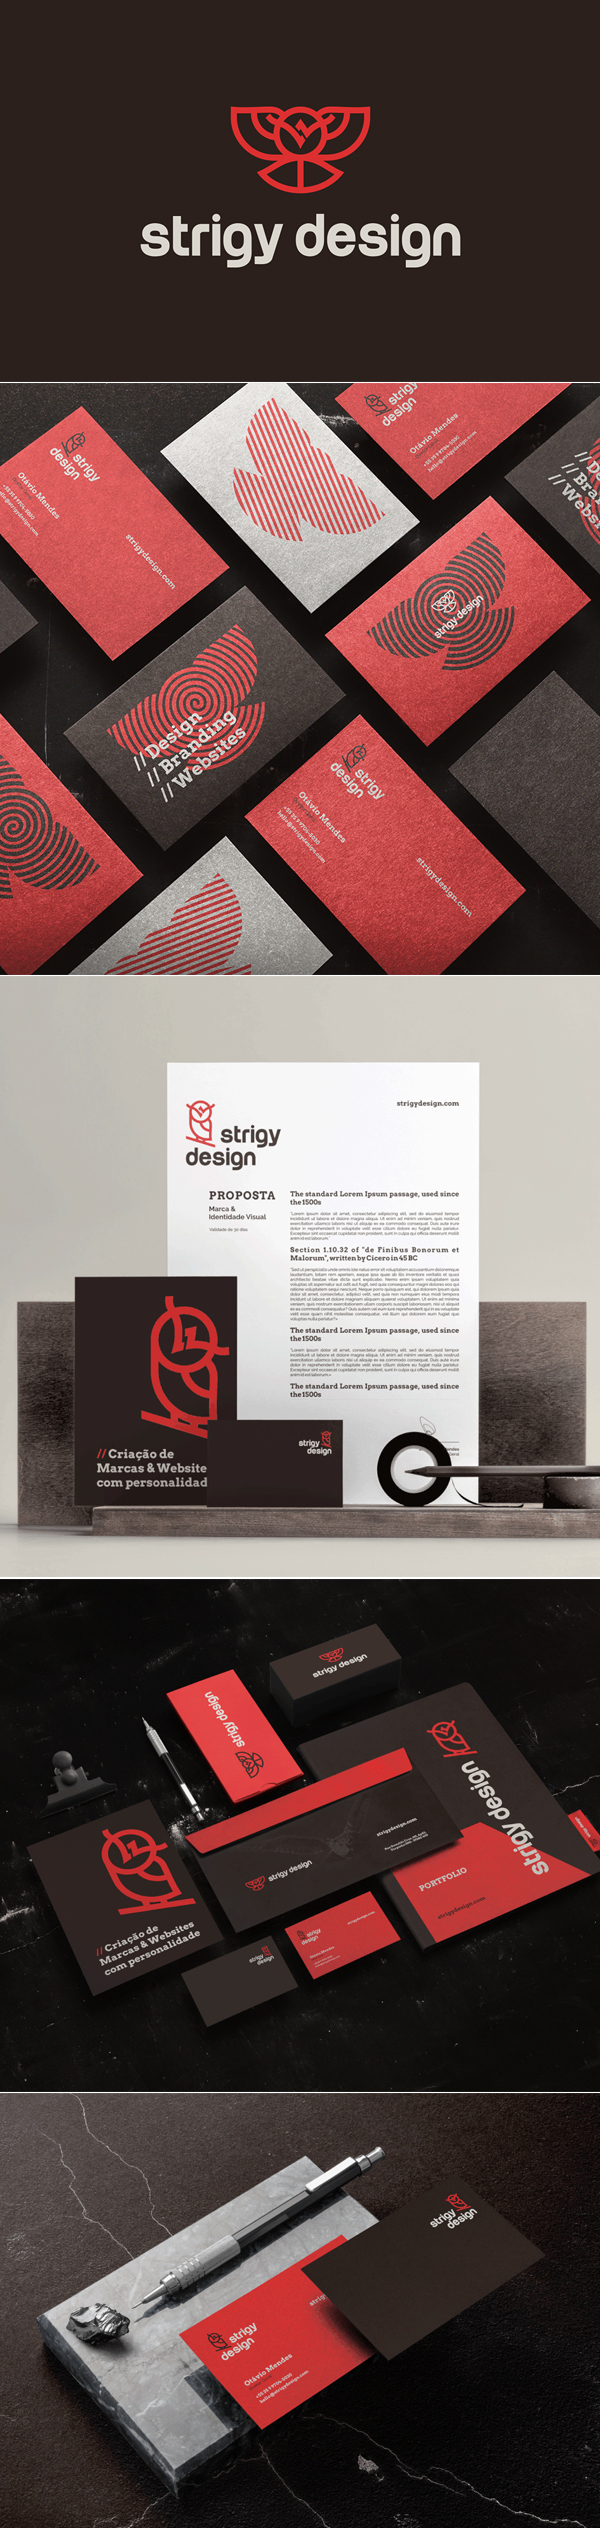 Stationery - Strigy Design Branding Identity by Strigy Design